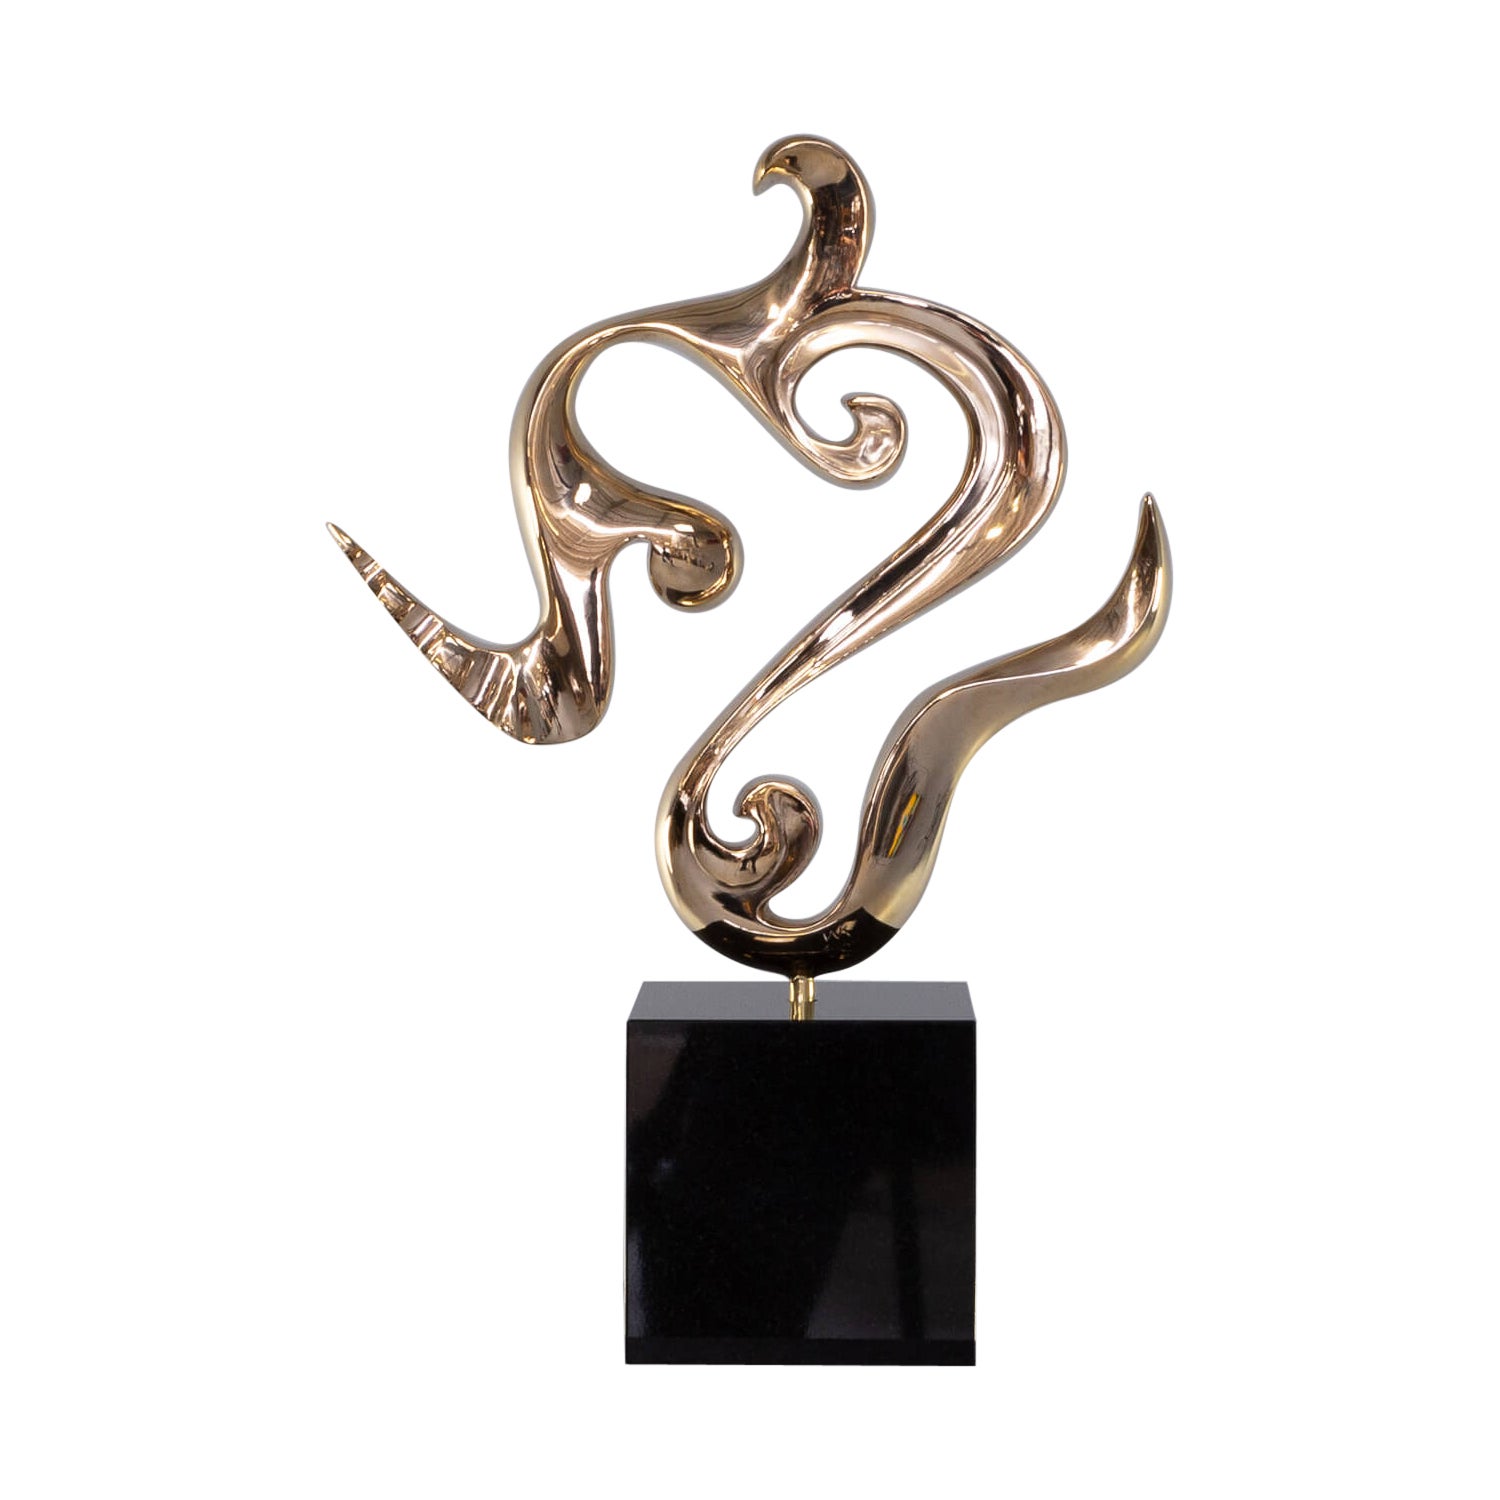 Jan Willem Krijger ‘Flow’ Bronze Sculpture For Sale